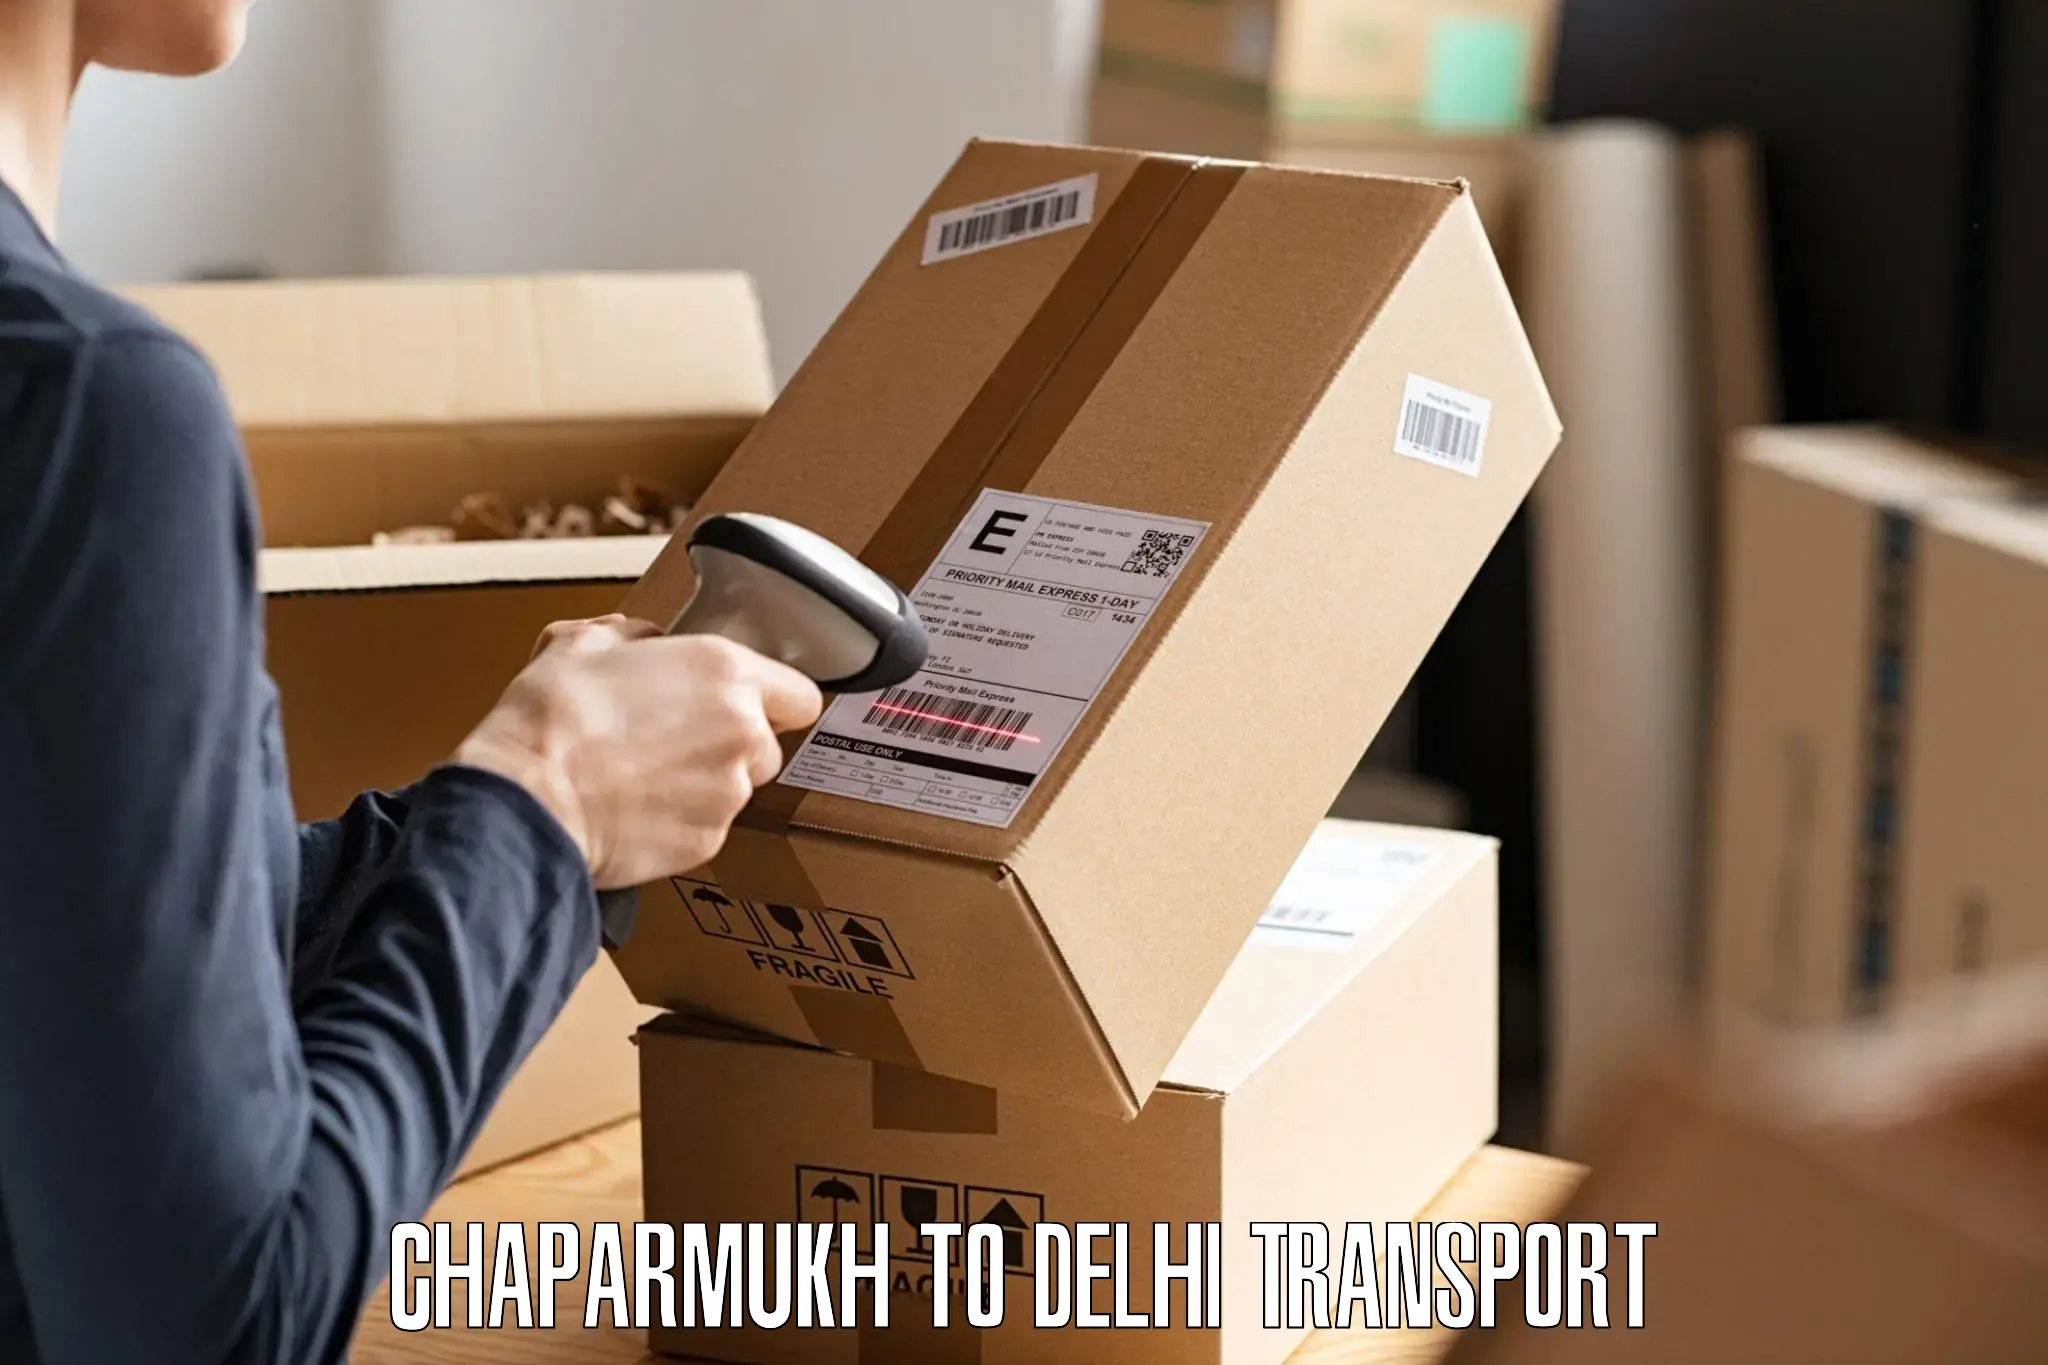 Shipping partner in Chaparmukh to Kalkaji